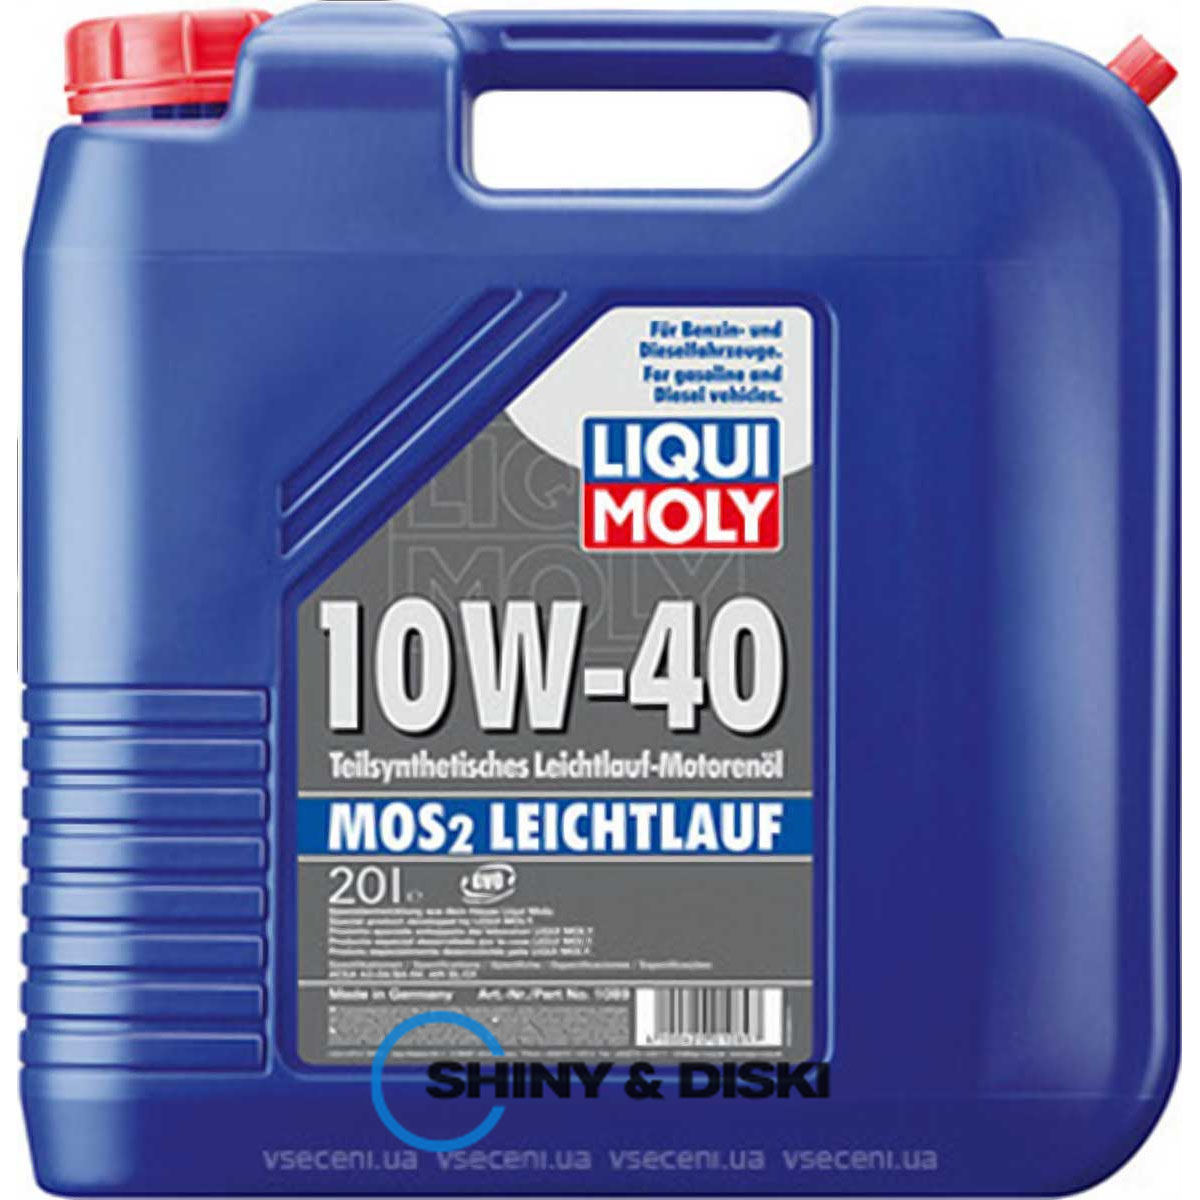 liqui moly mos2 leichtlauf 10w-40 (20л)